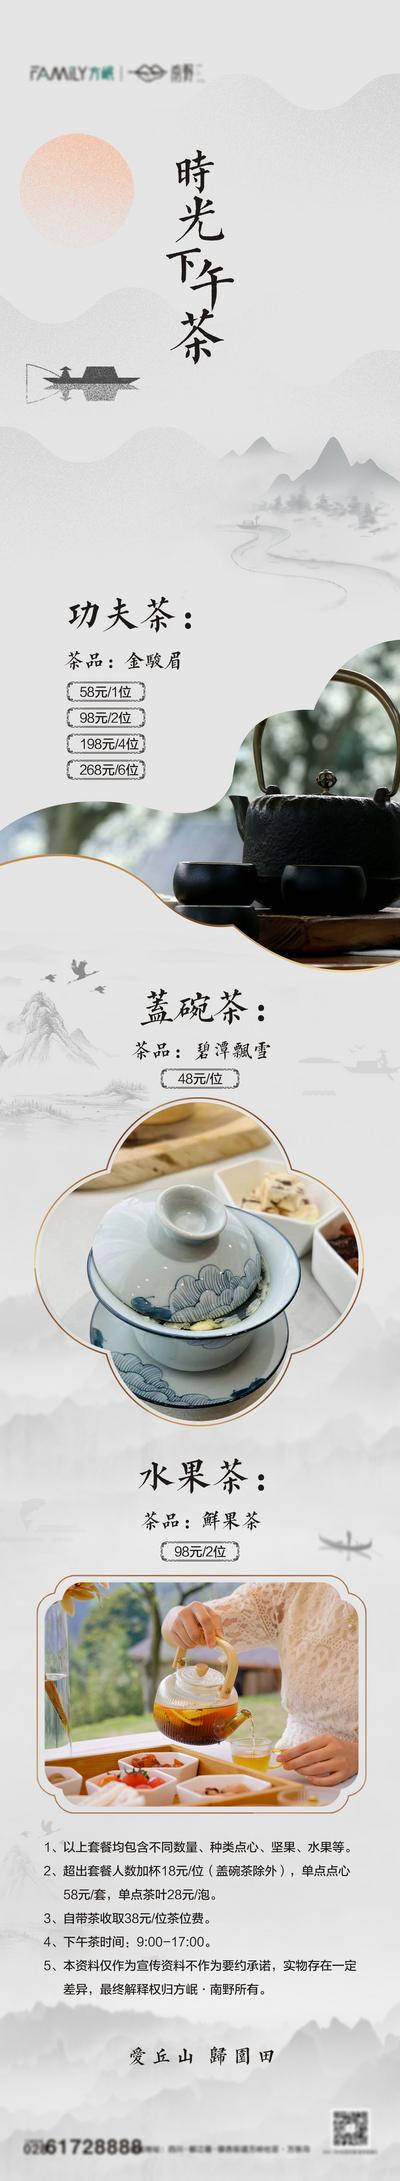 南门网 专题设计 长图 下午茶 品鉴 中式 山水 中国风